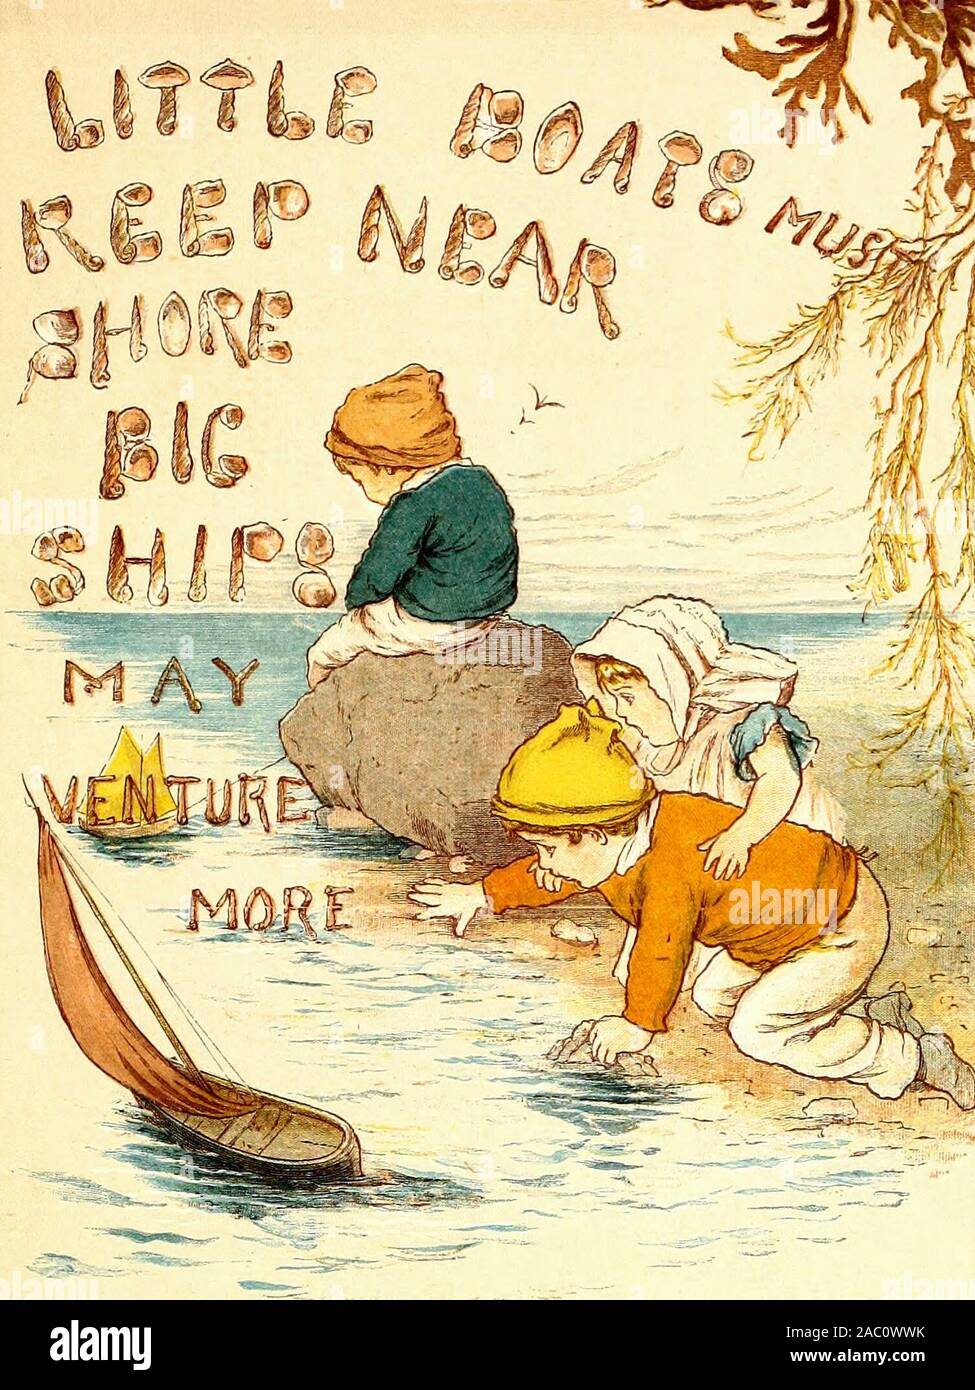 Pequeños botes debe mantenerse cerca de la costa, grandes buques puede aventurarse más - una ilustración vintage de un viejo proverbio Foto de stock